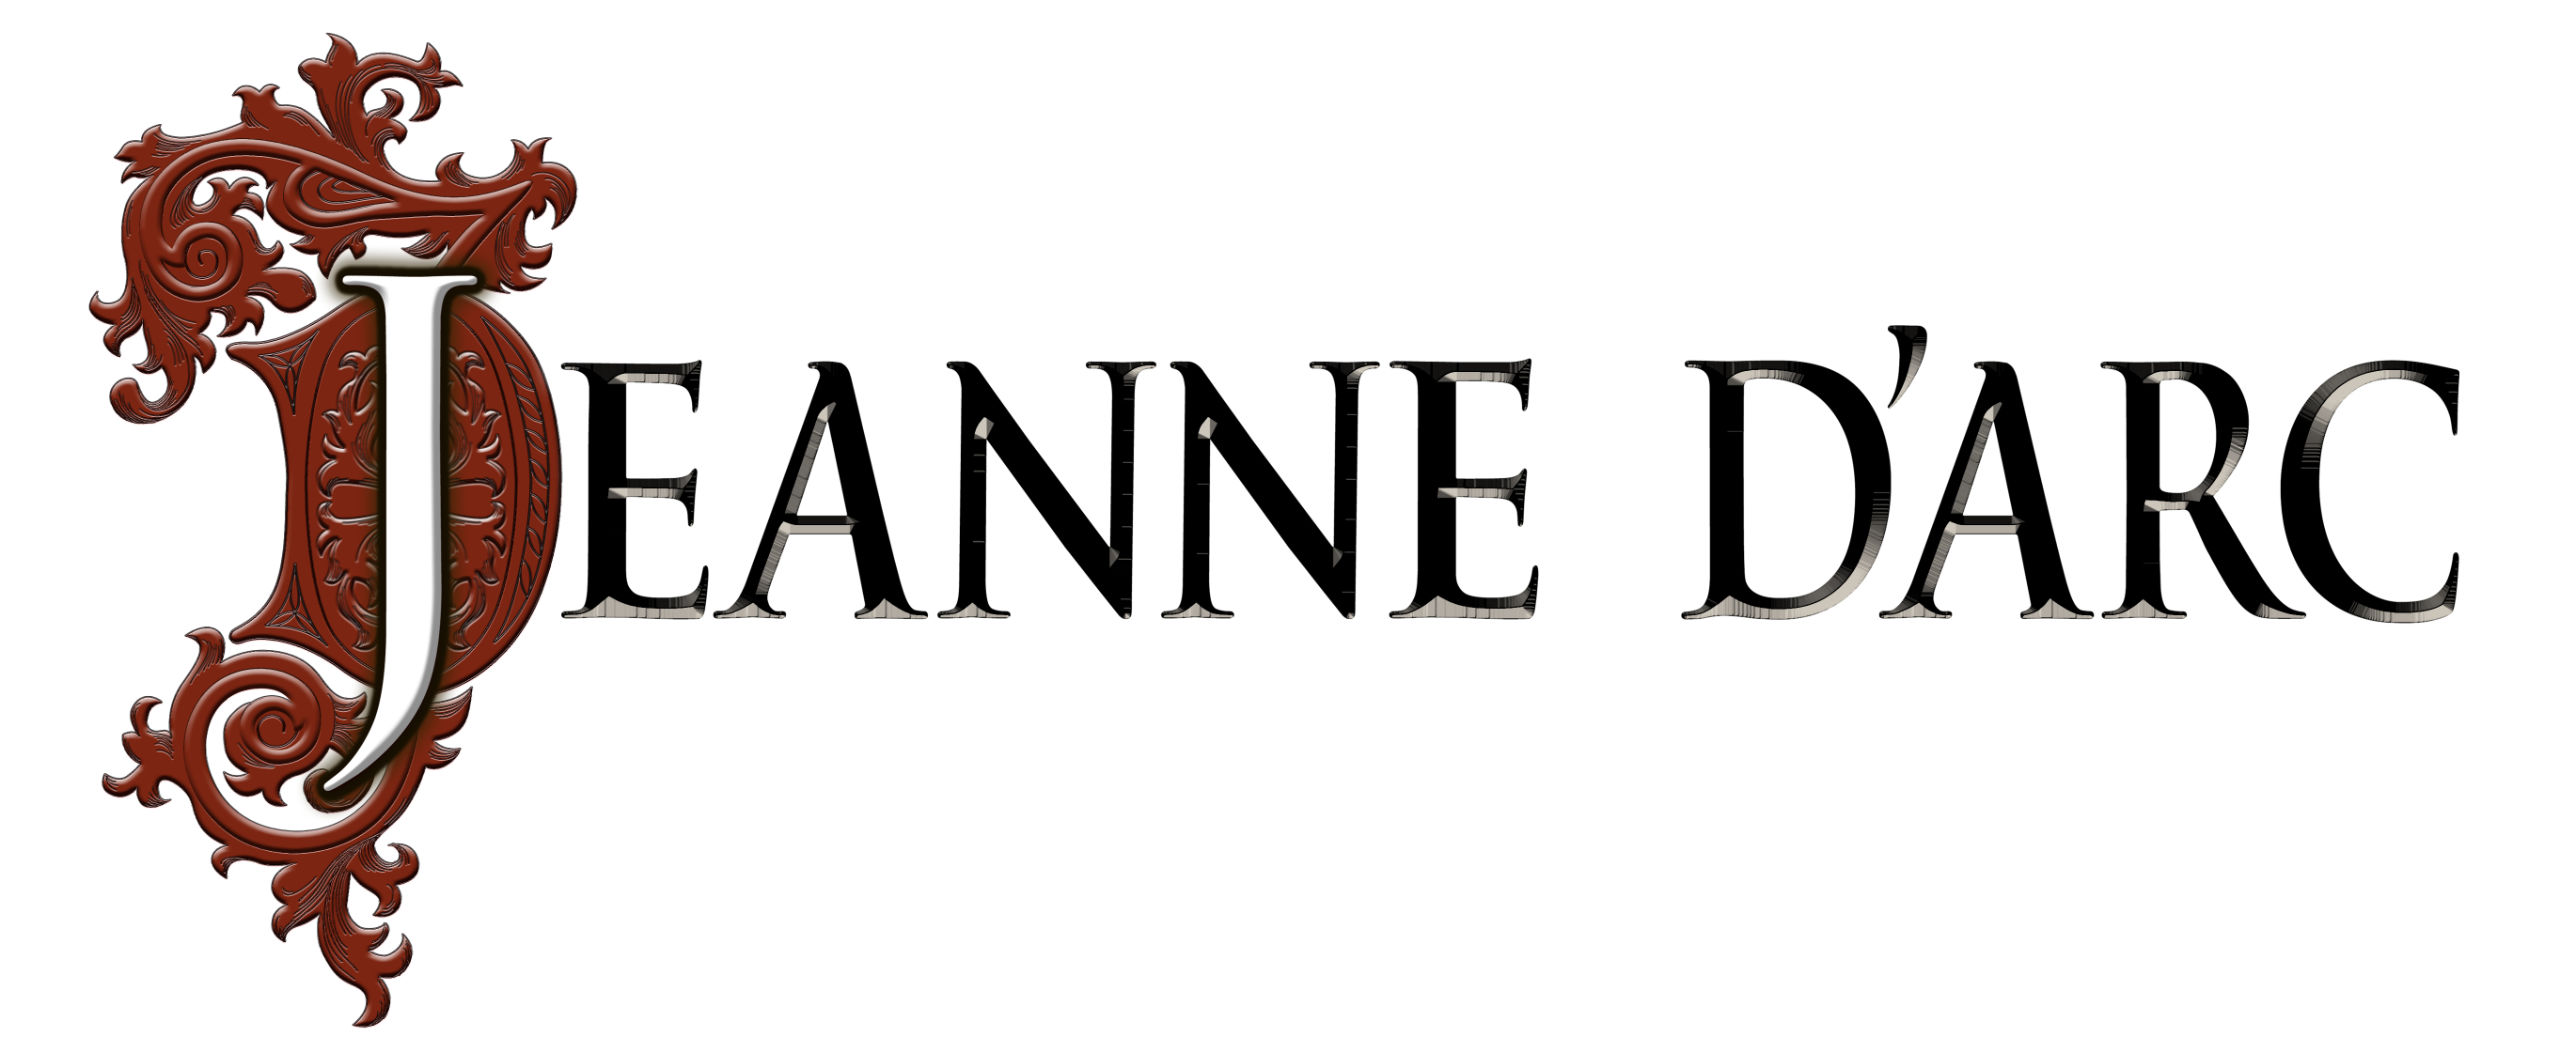 Jeanne dArc Logo on White